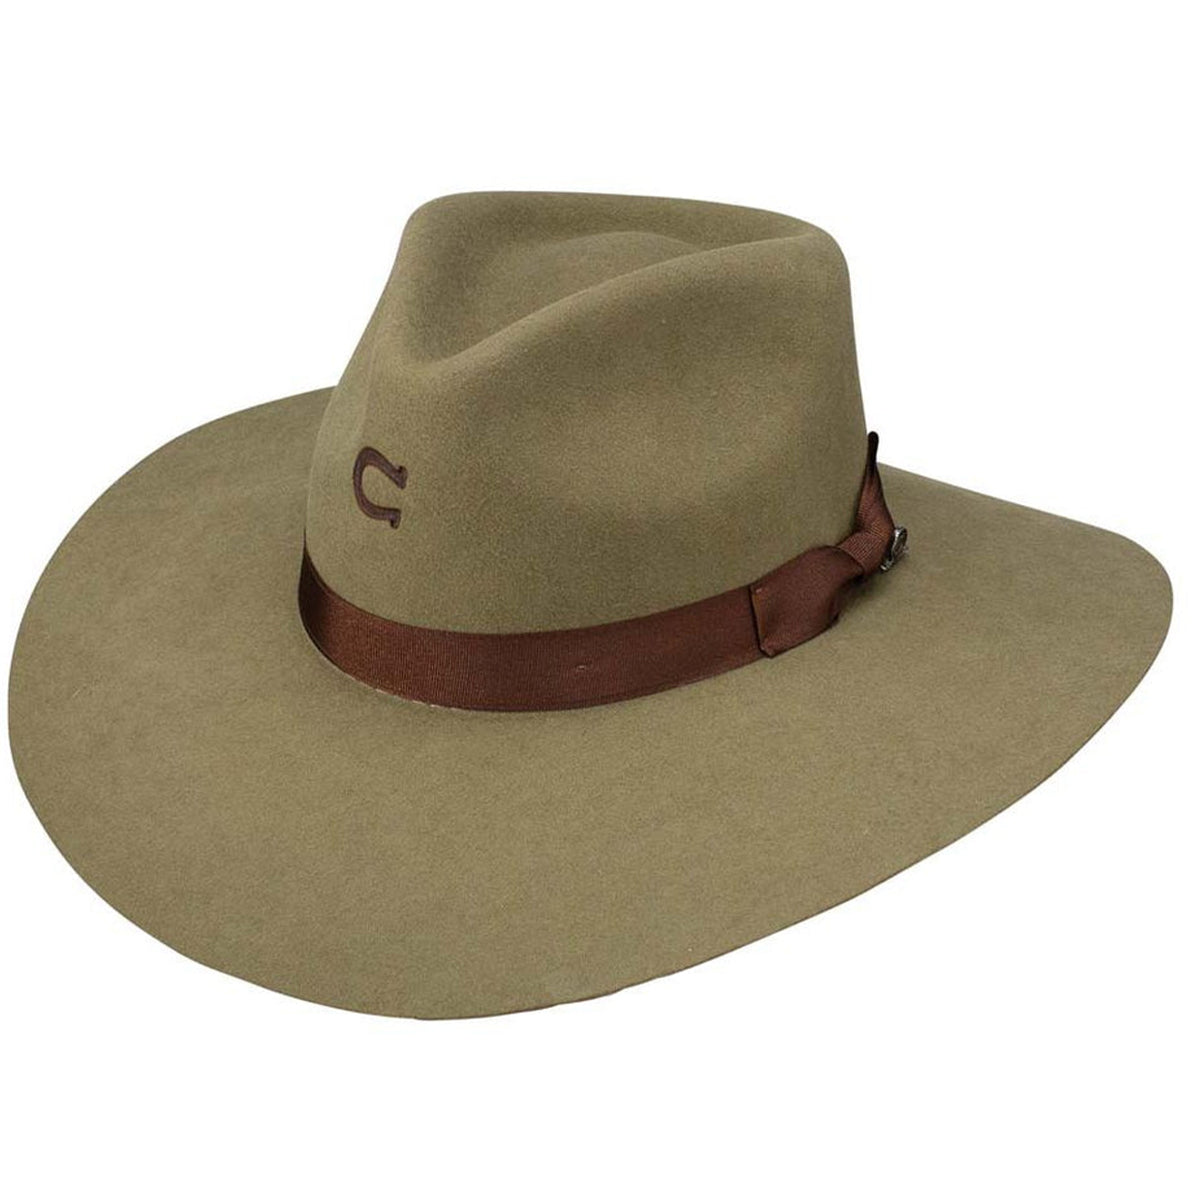 Highway Fedora Cowgirl Hats